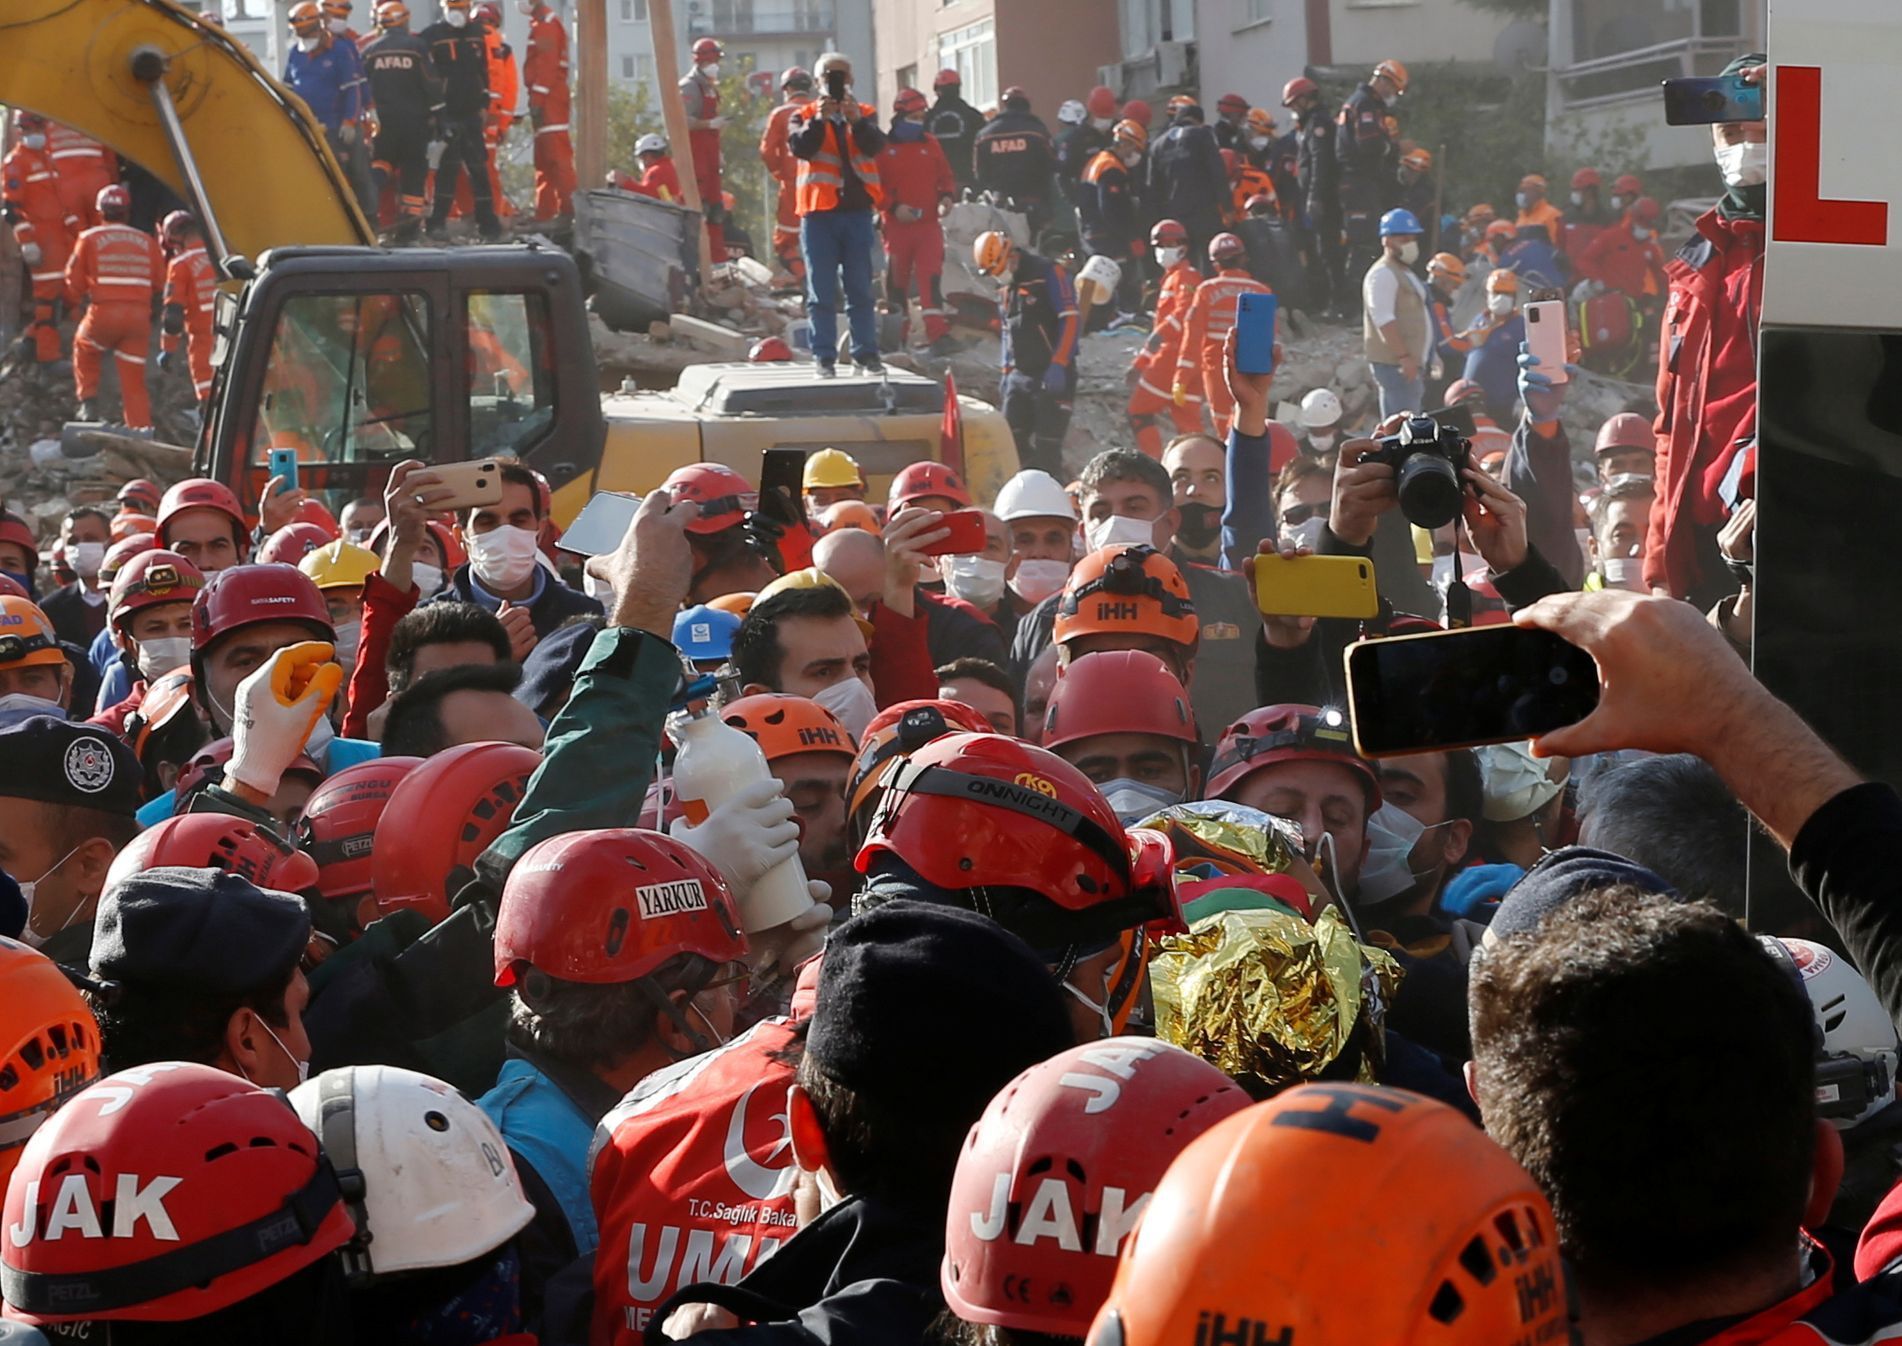 Záchranné práce v Turecku - zemětřesení